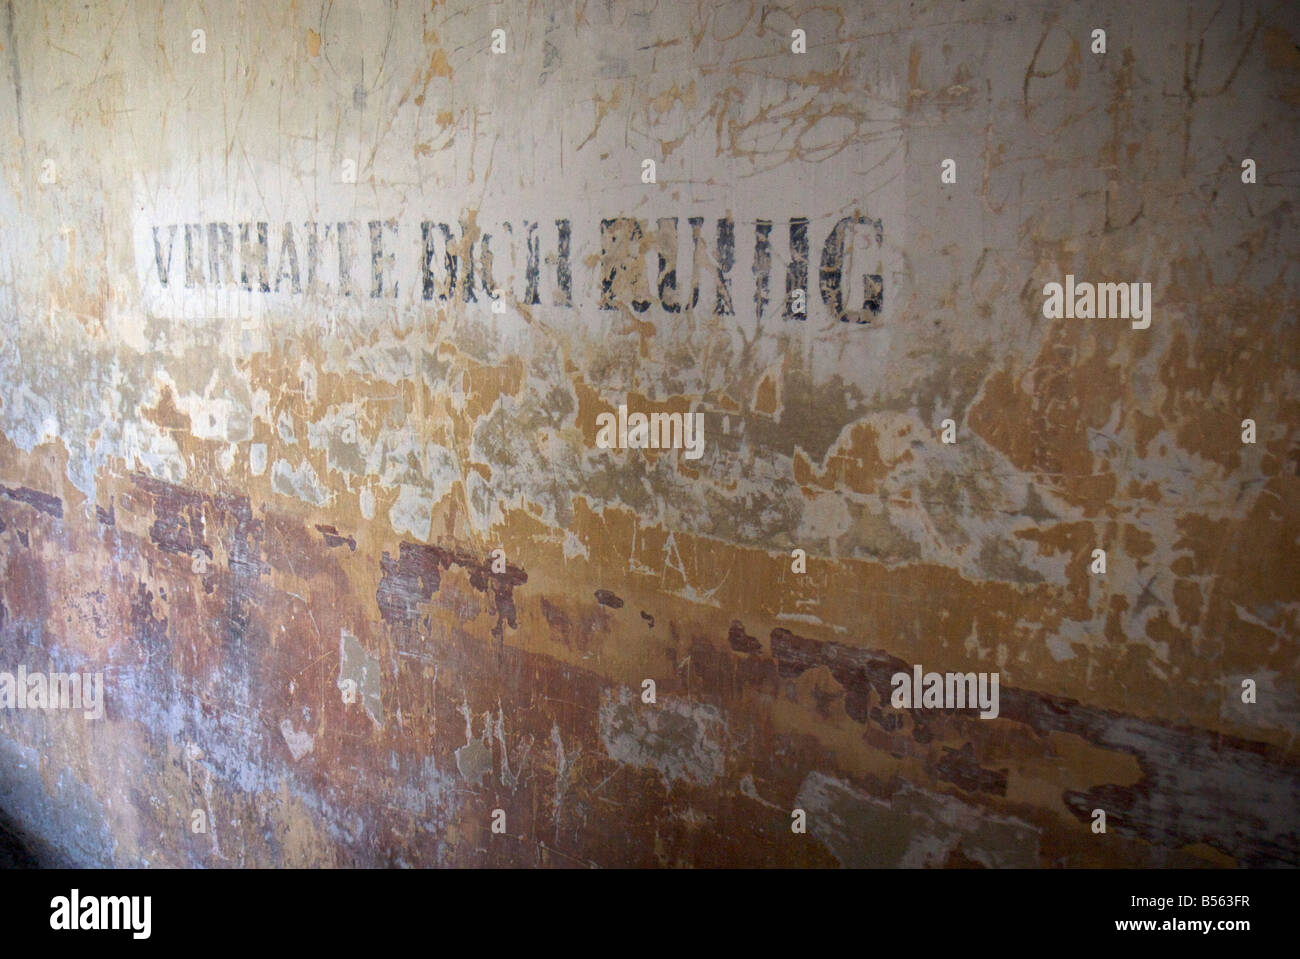 Iscrizione "Verhalte dich ruhig' su una parete dell'ex campo di concentramento di Auschwitz II (Birkenau) Foto Stock